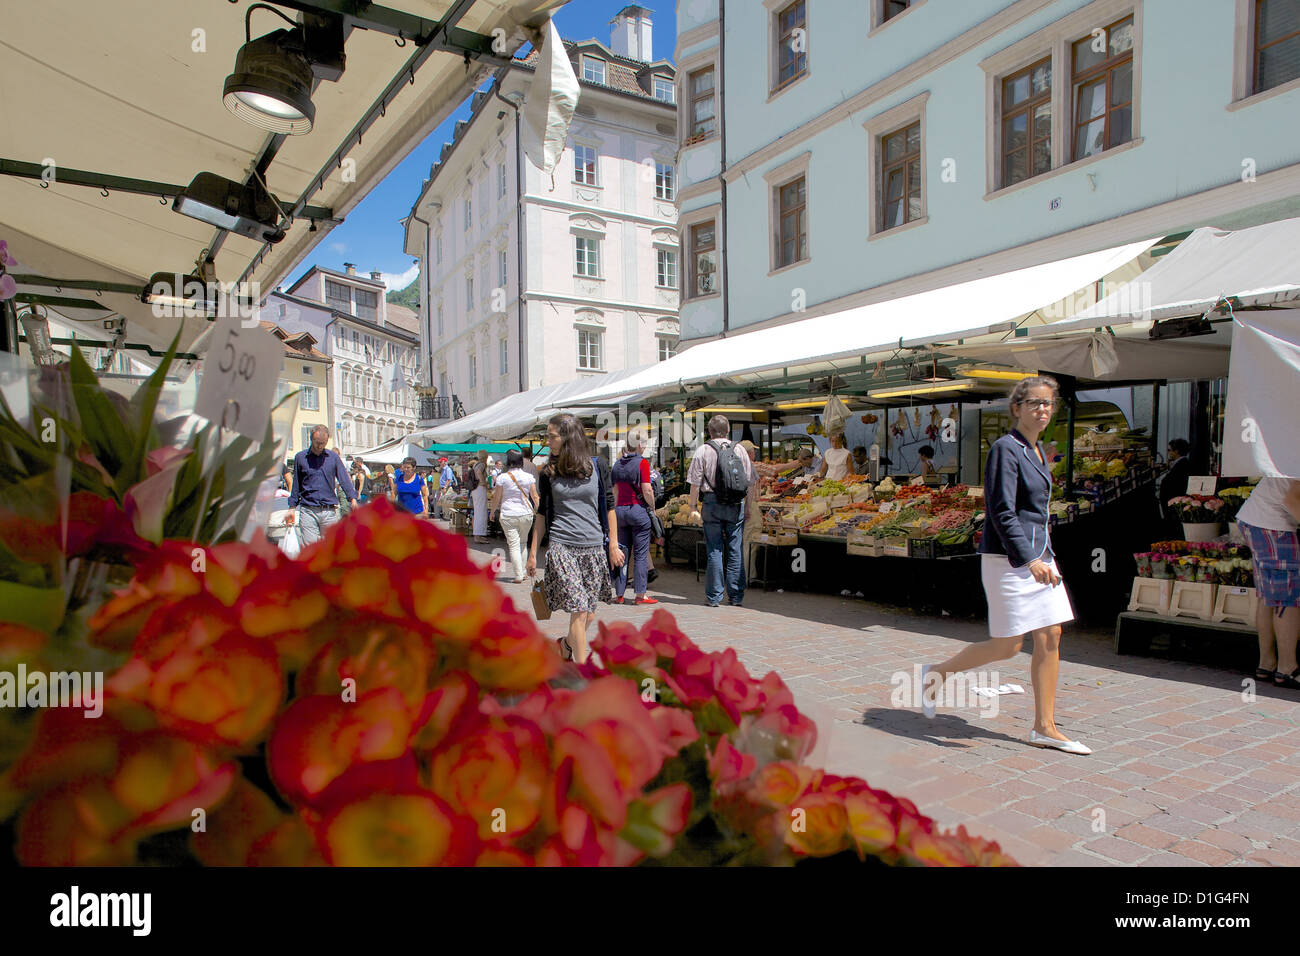 Market stall, Piazza Erbe Market, Bolzano, Bolzano Province, Trentino-Alto Adige, Italy, Europe Stock Photo